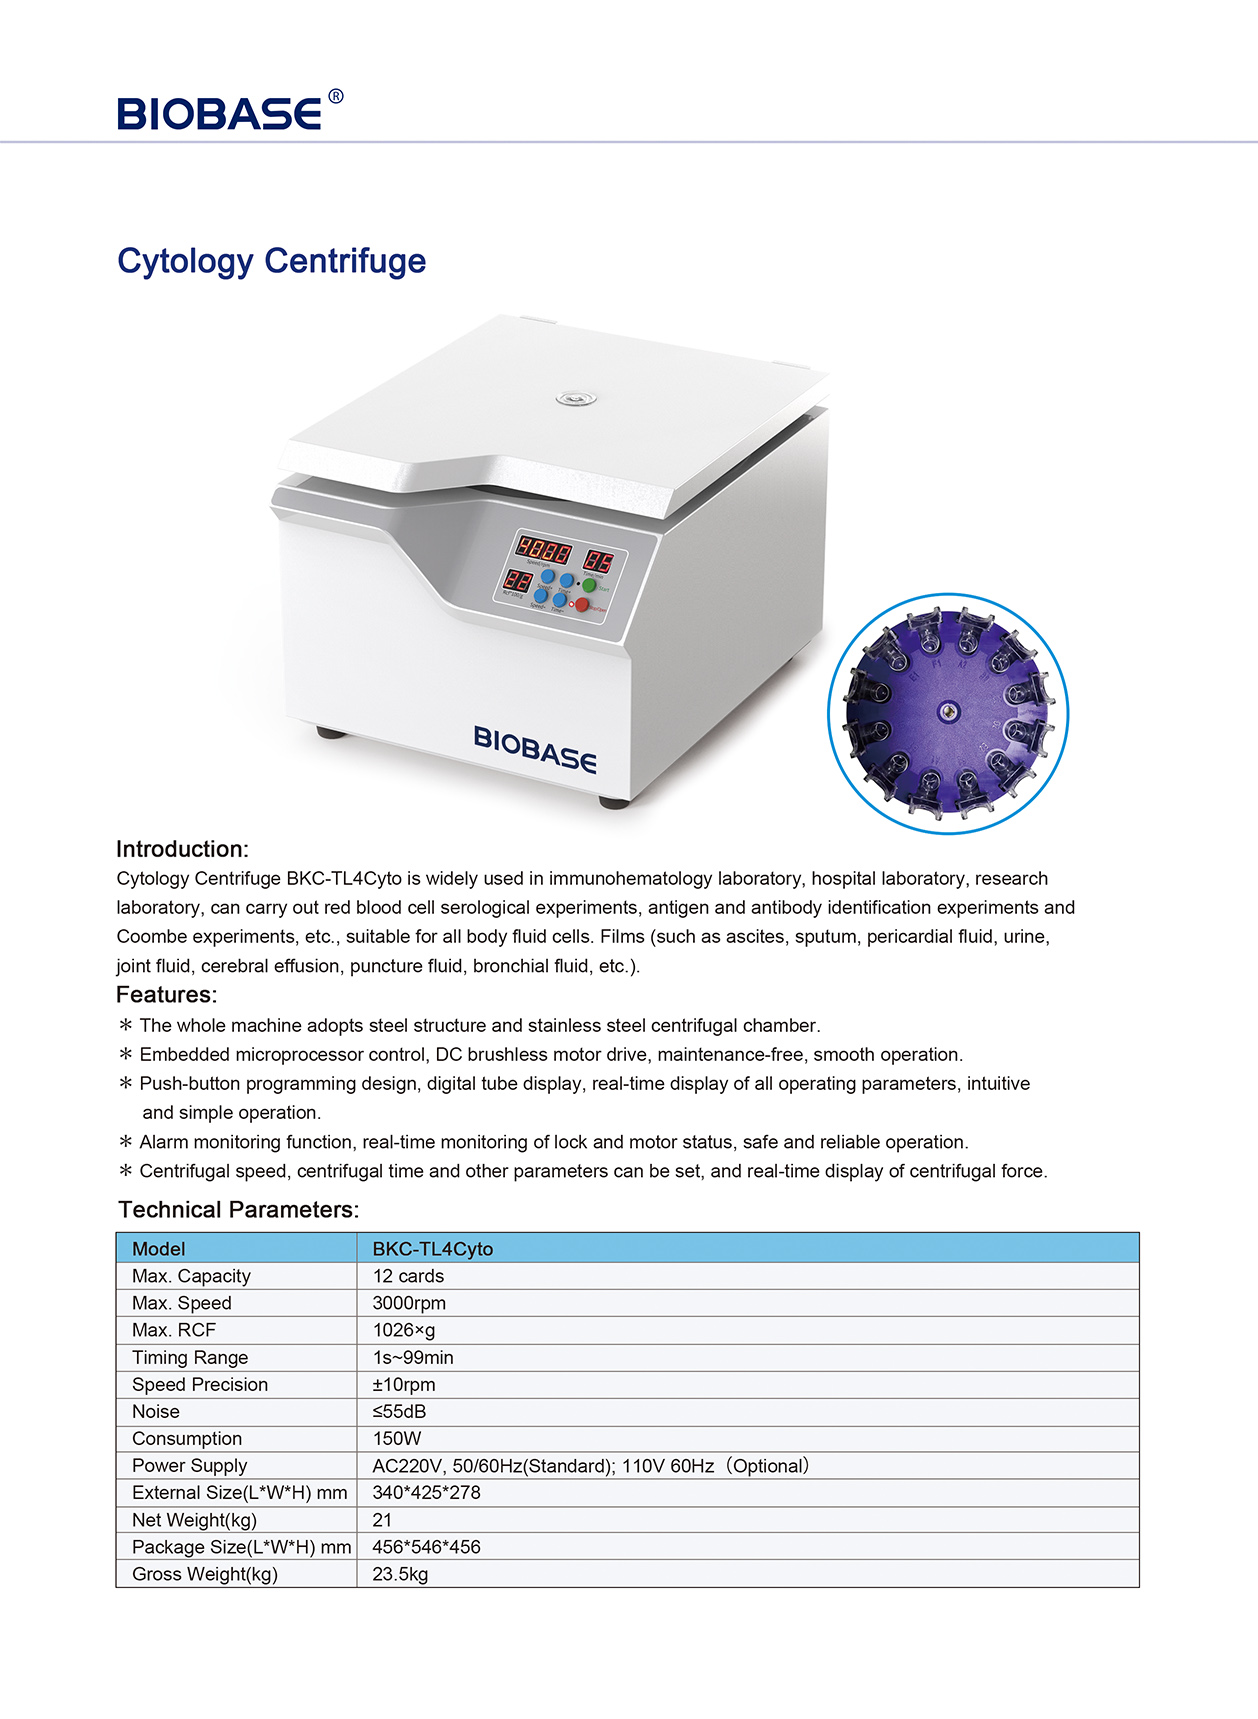 Cytology Centrifuge BKC-TL4Cyto